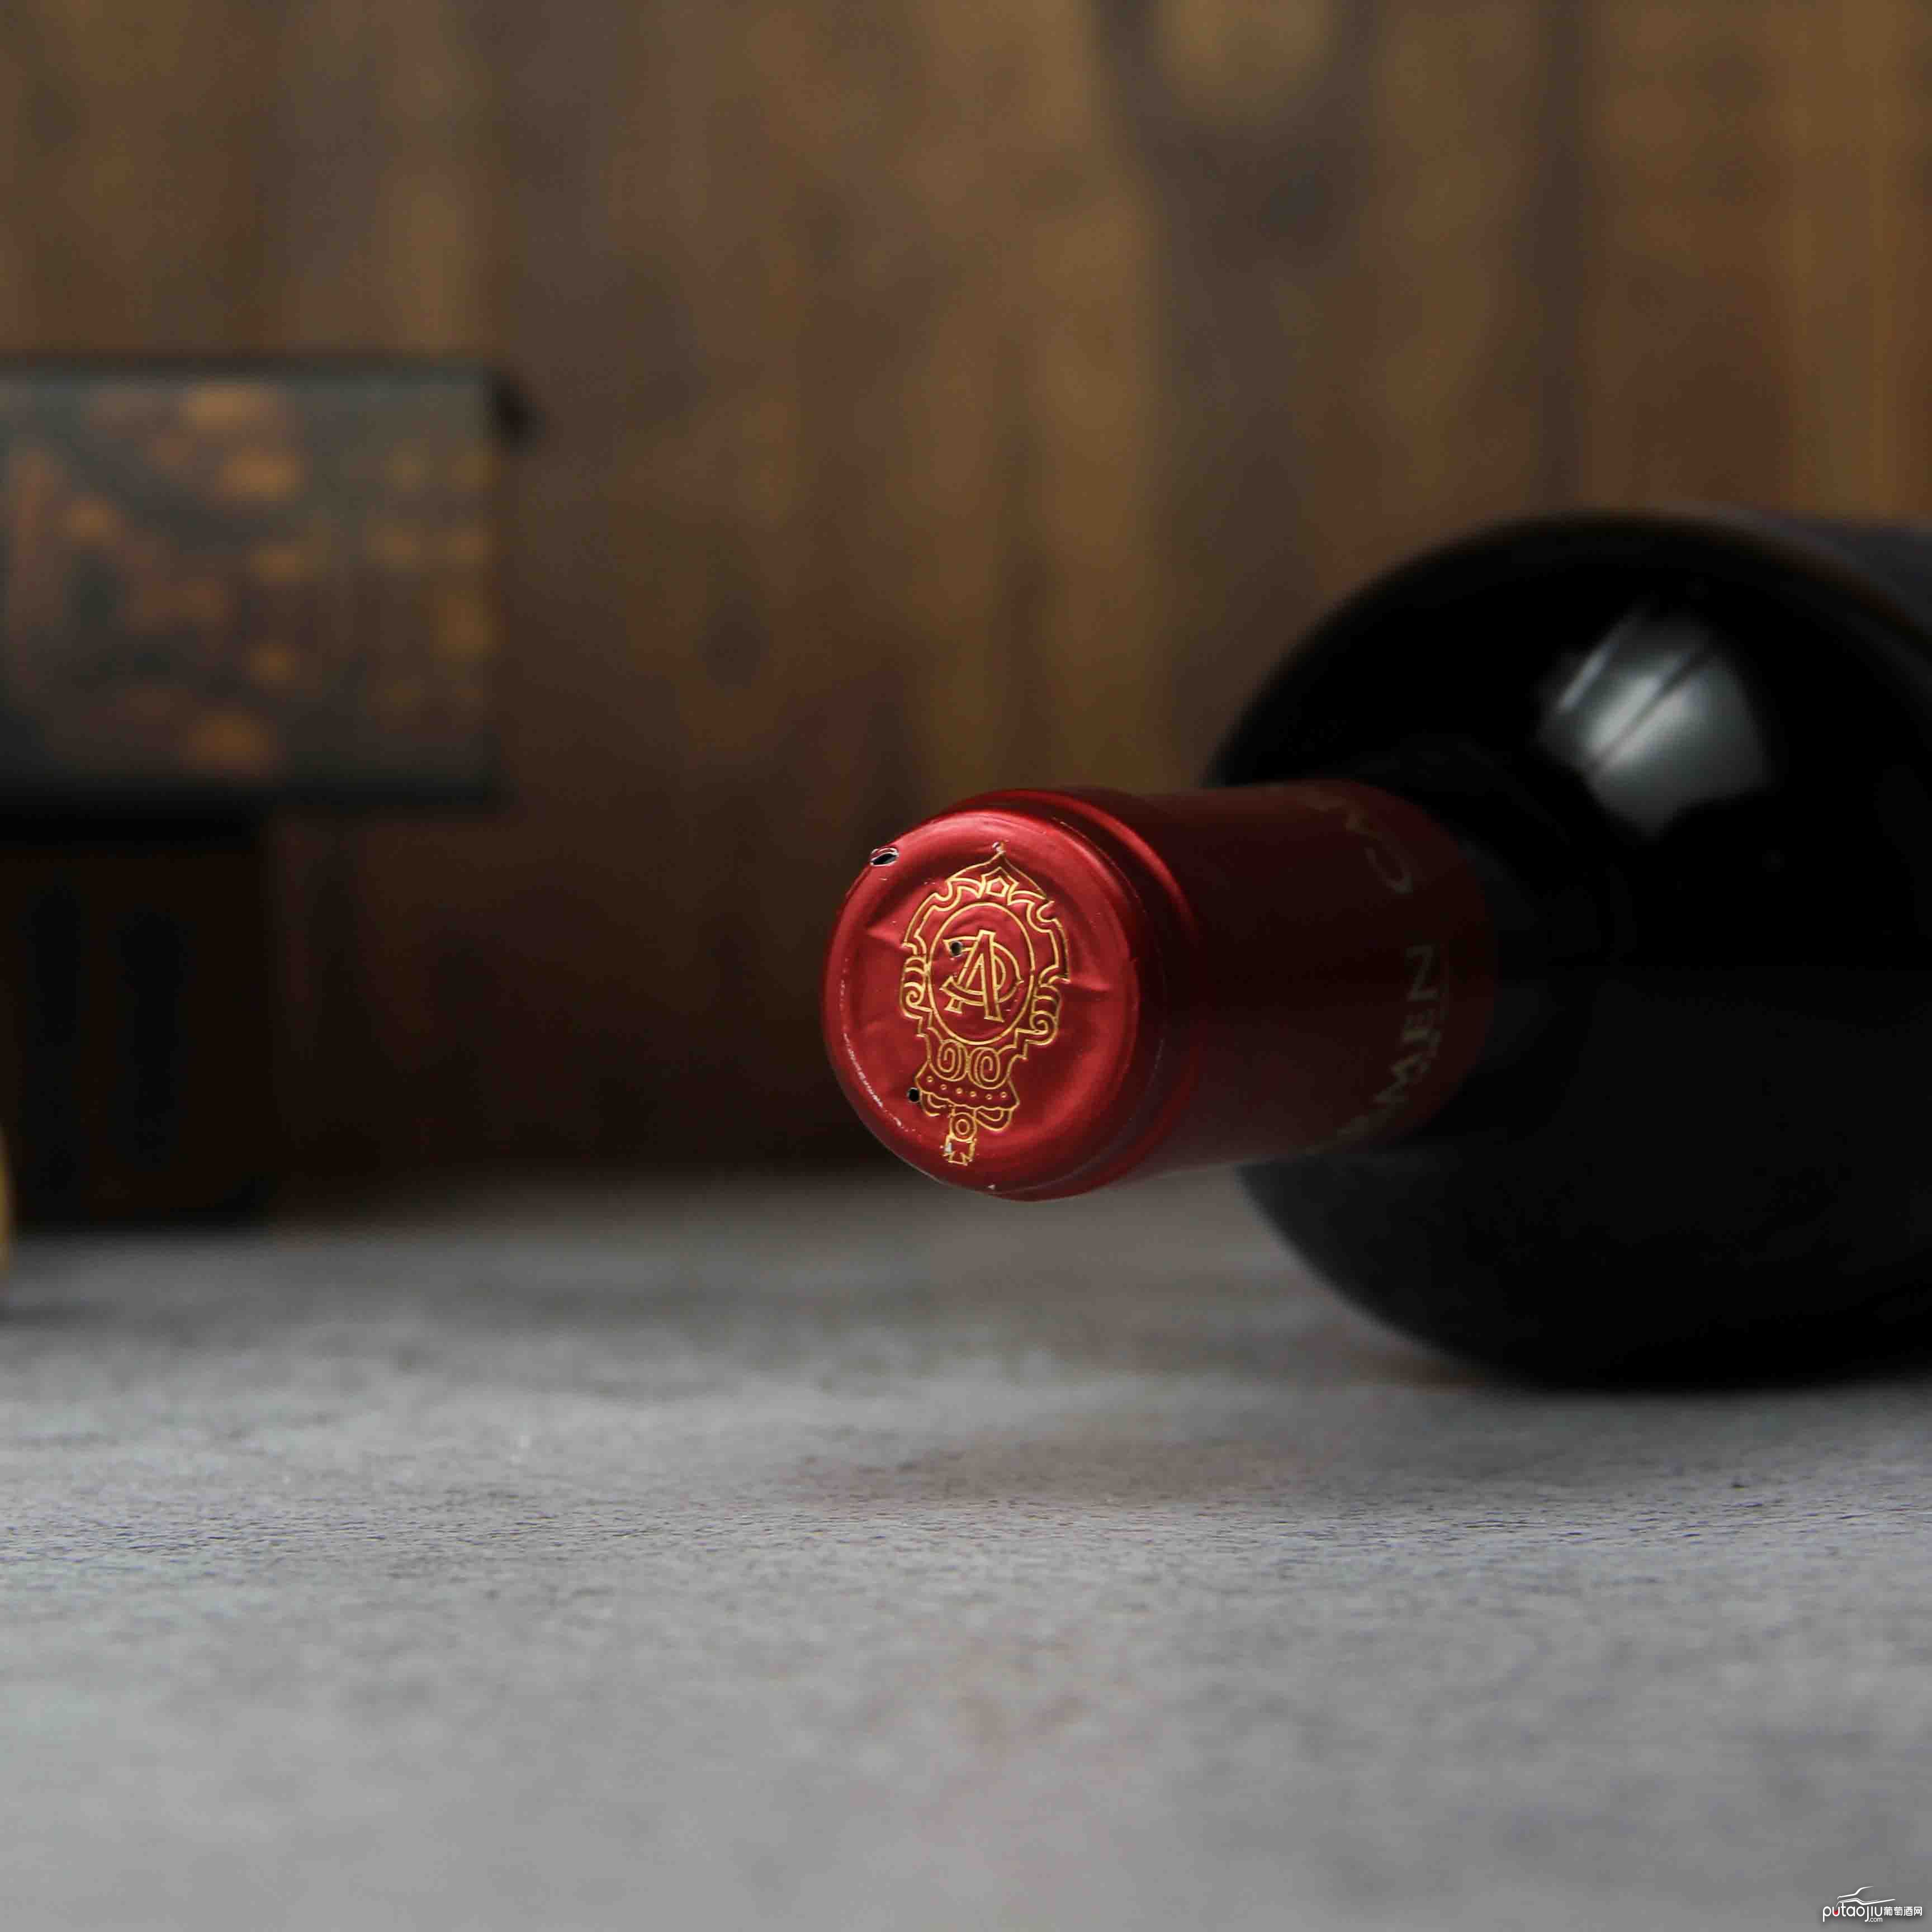 智利科尔查瓜山谷卡乐门先驱者系列赤霞珠红葡萄酒 